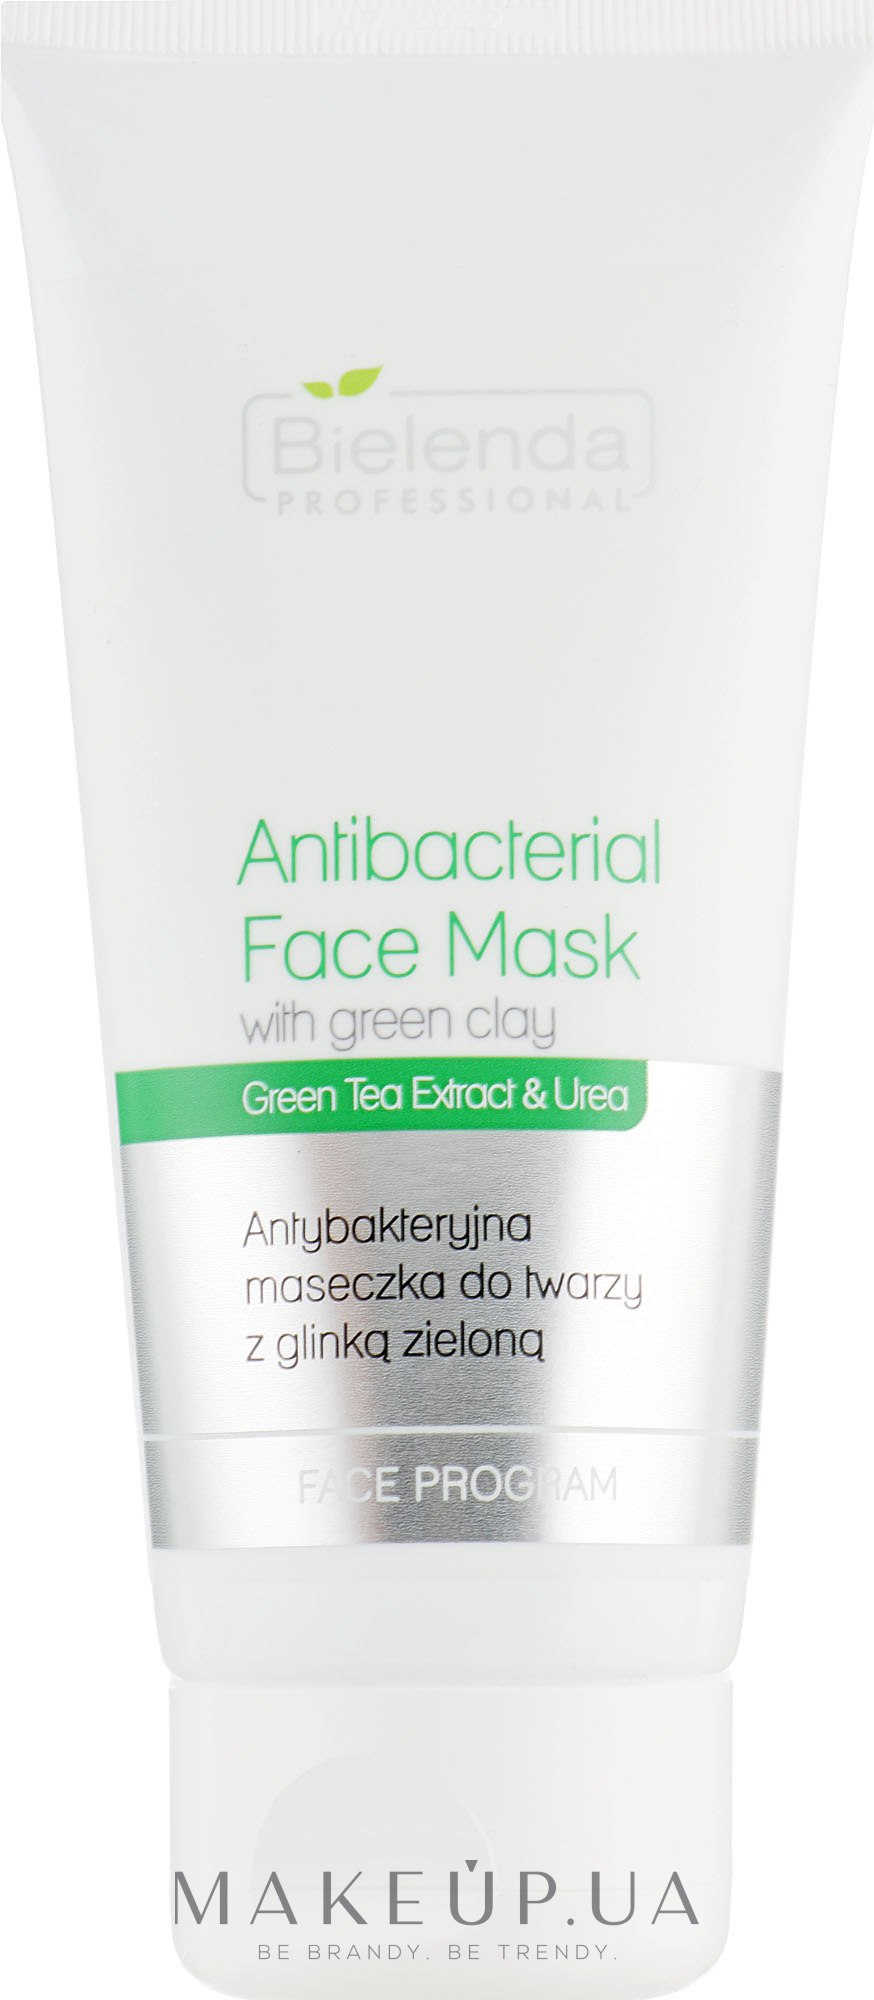 Антибактериальная маска для лица с зелёной глиной - Bielenda Professional Face Program Antibacterial Face Mask with Green Clay — фото 150g